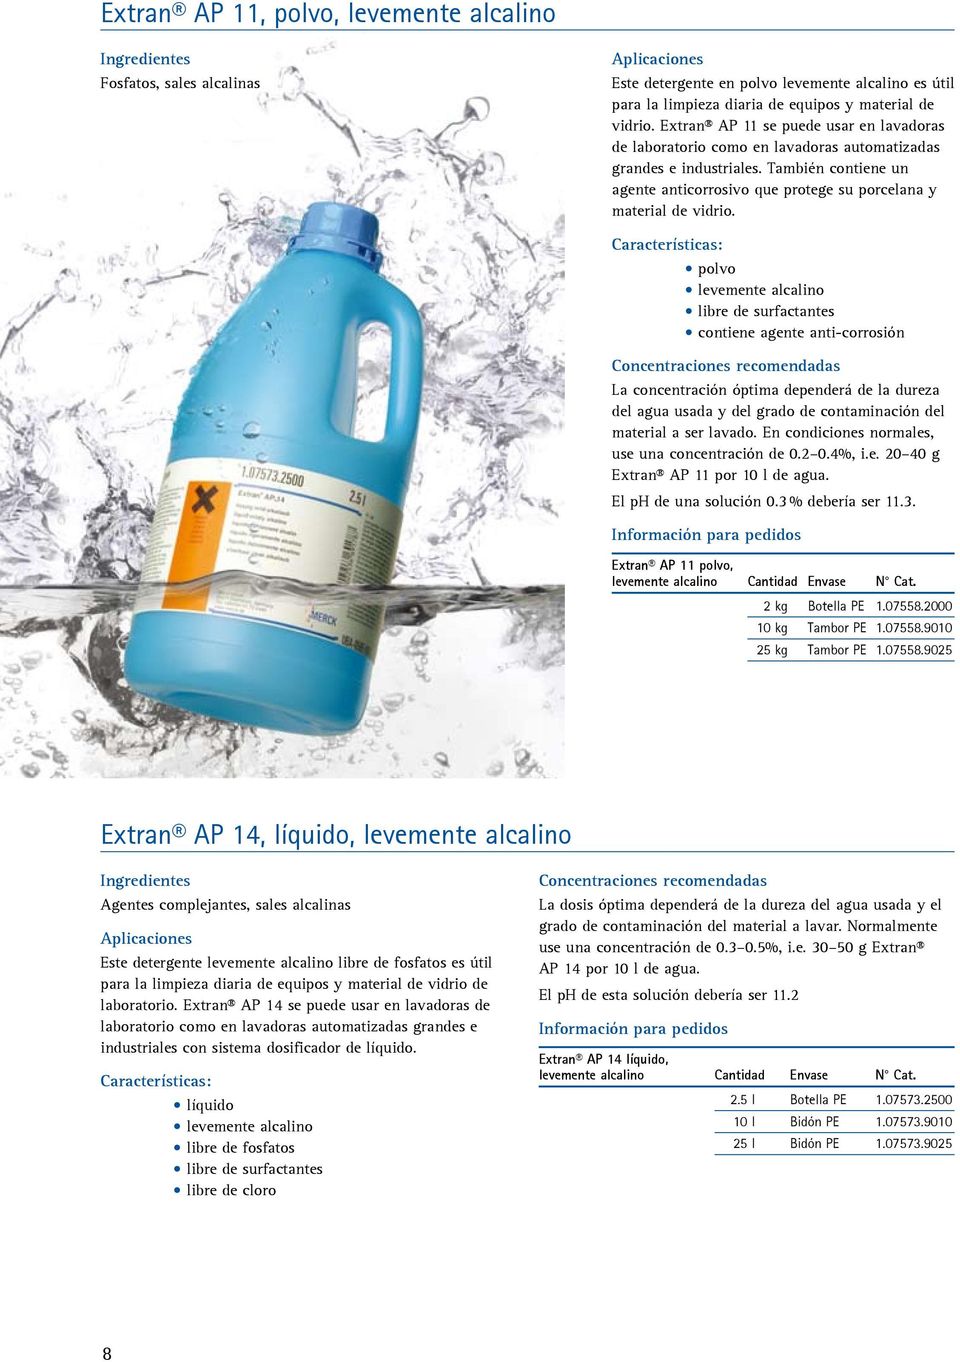 Fosfatos, sales alcalinas olvo p levemente alcalino libre de surfactantes contiene agente anti-corrosión La concentración óptima dependerá de la dureza del agua usada y del grado de contaminación del